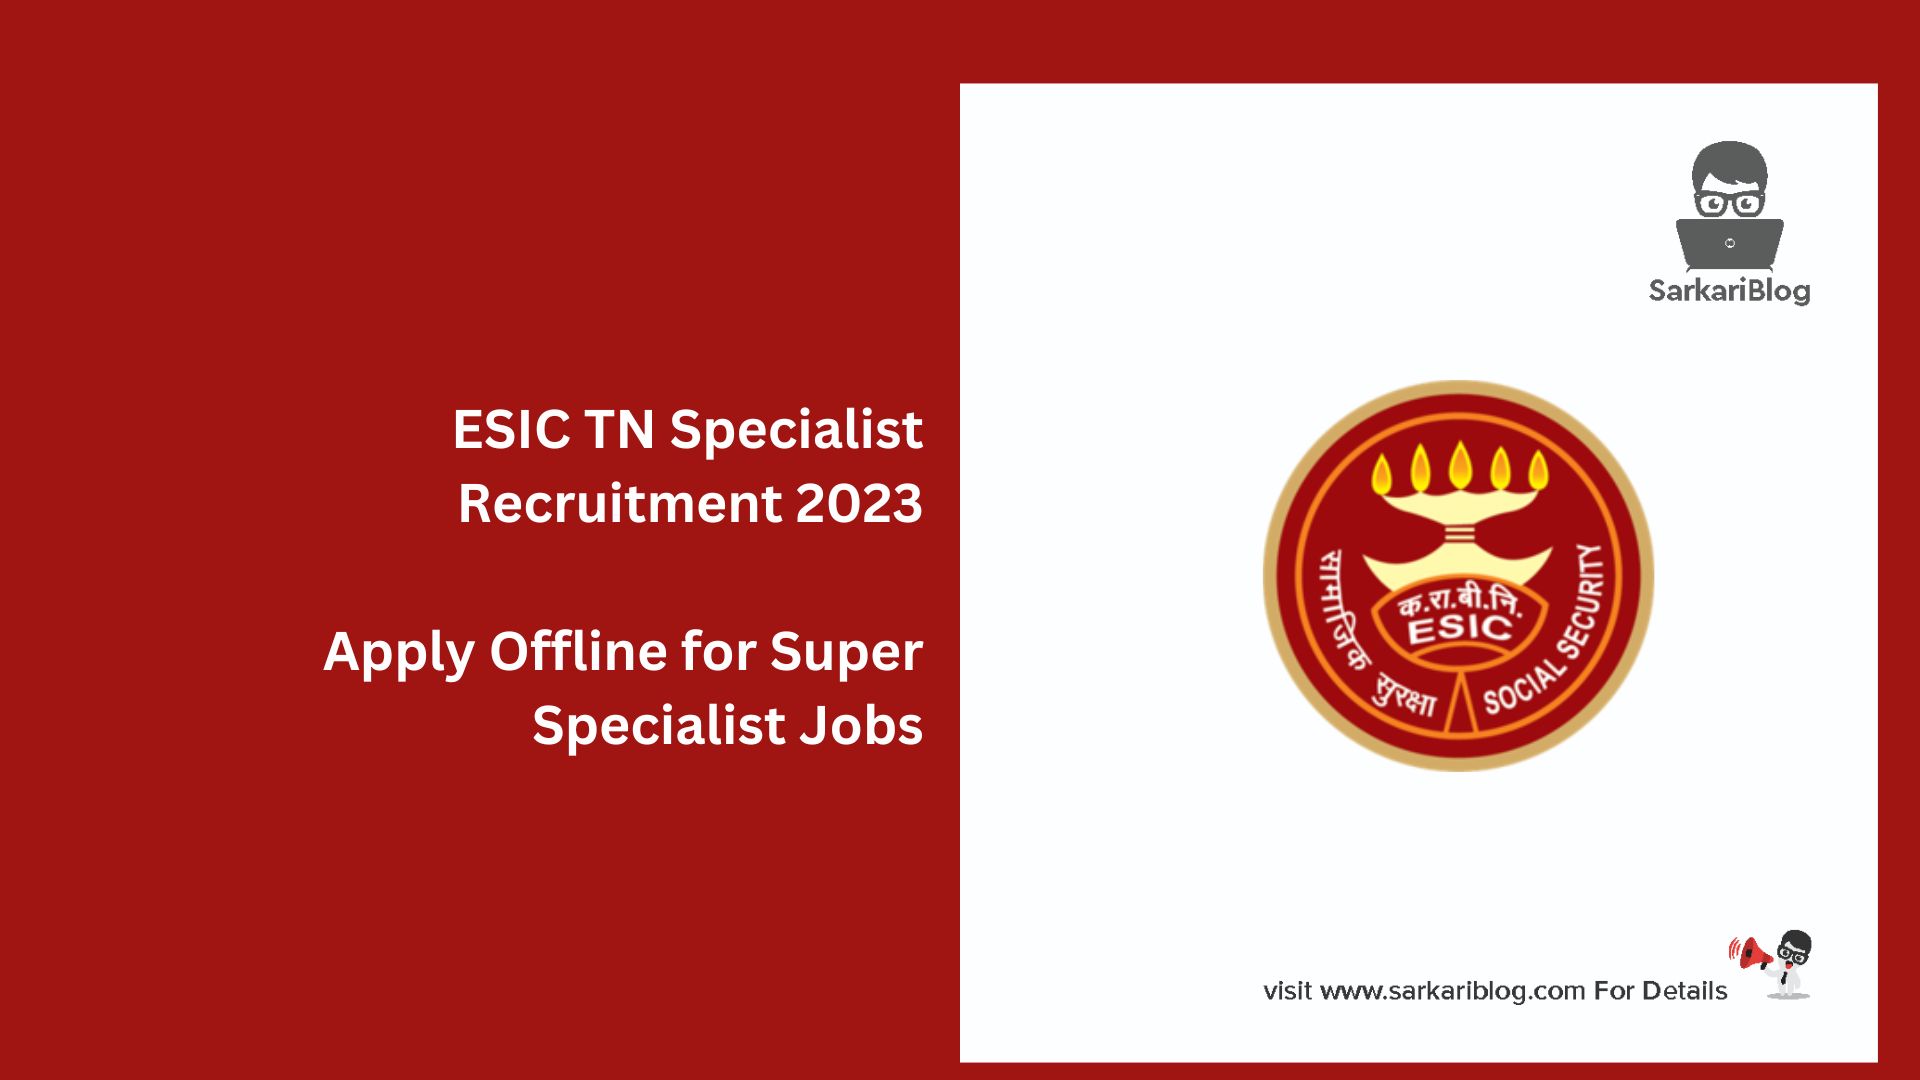 ESIC TN Specialist Recruitment 2023